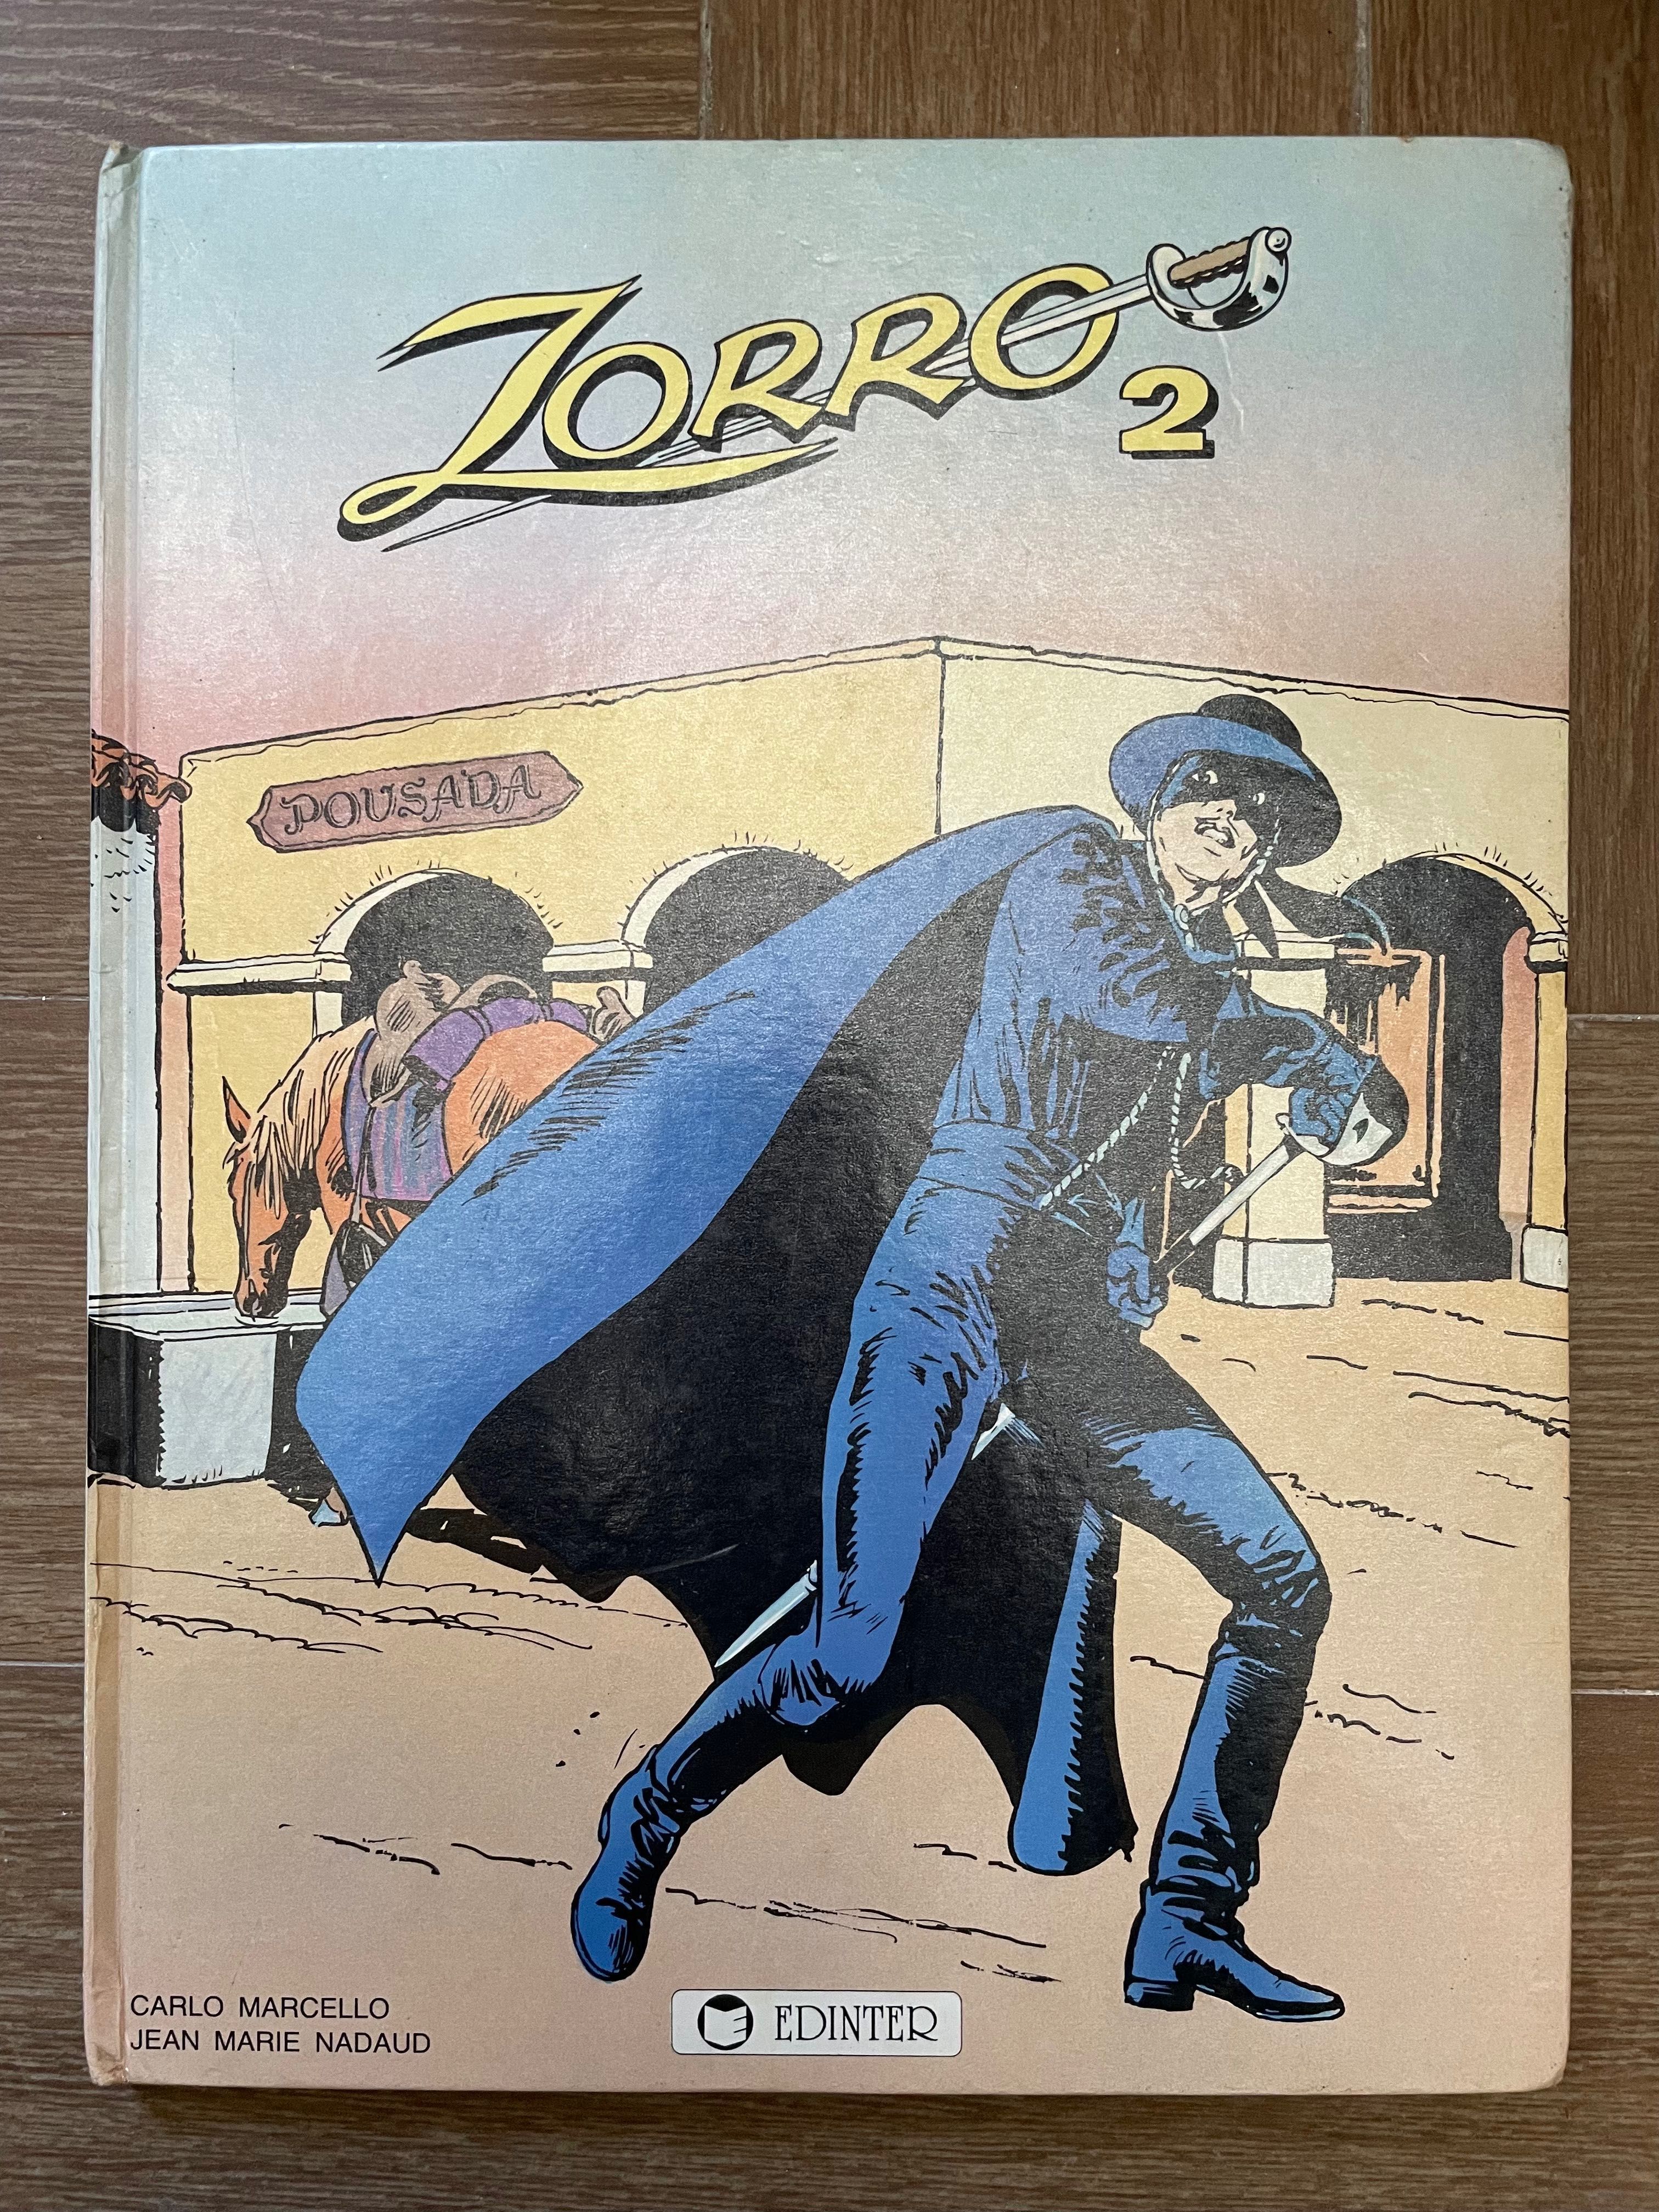 BD - Zorro 2 (portes grátis)